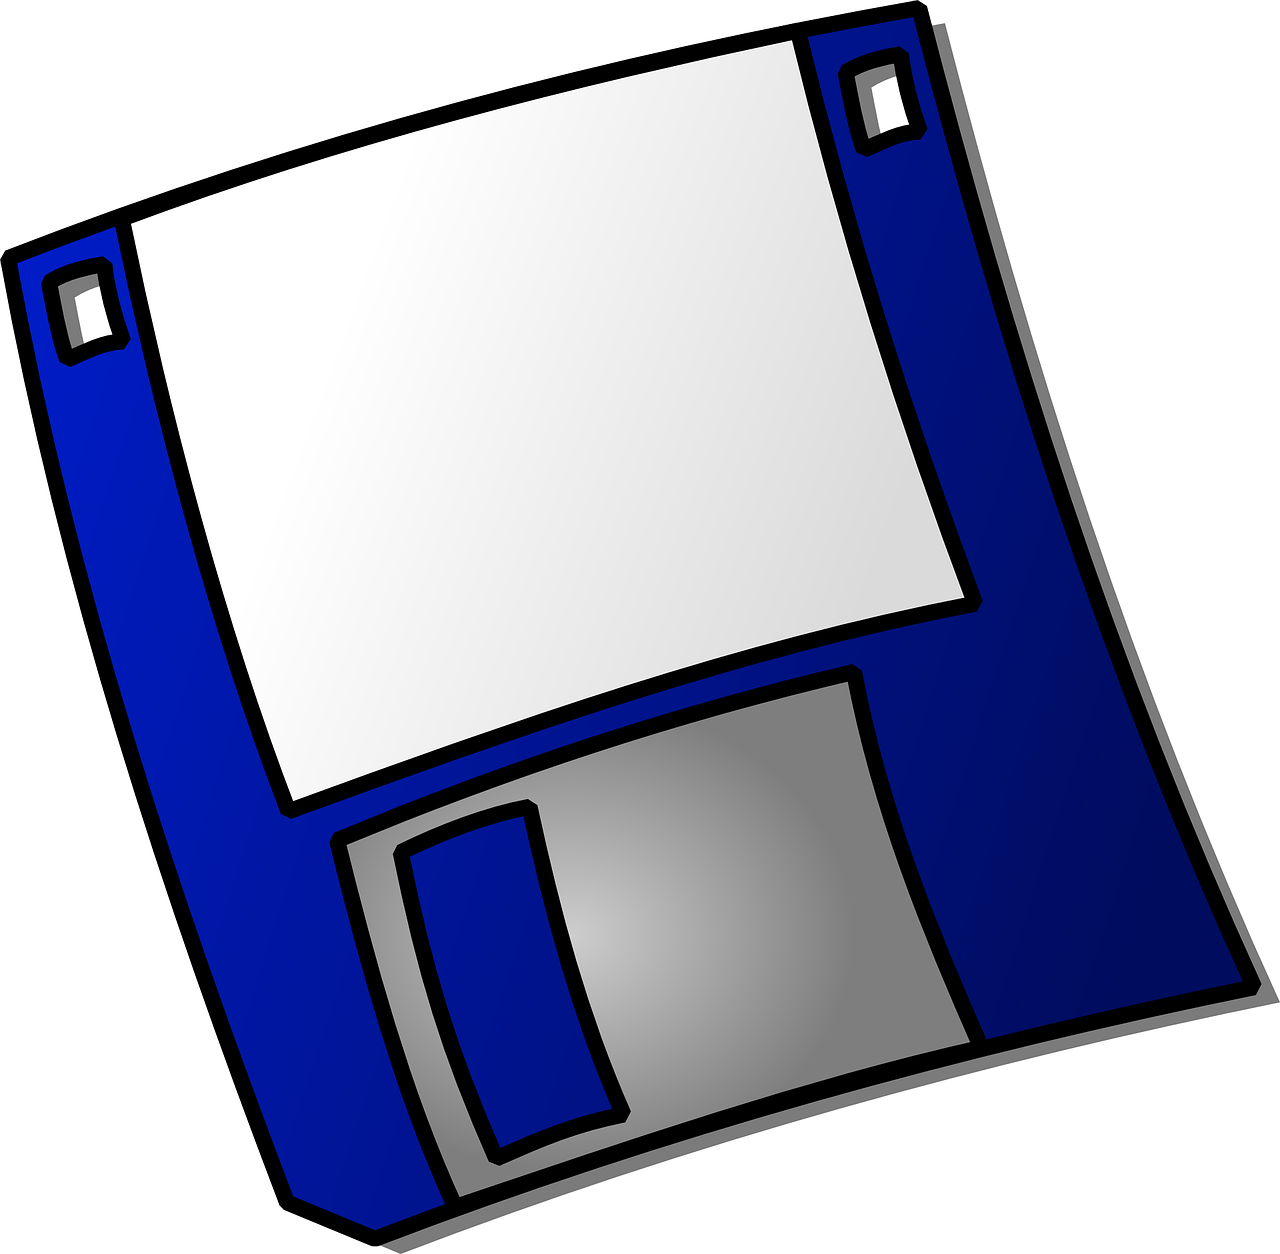 floppy disk media free photo